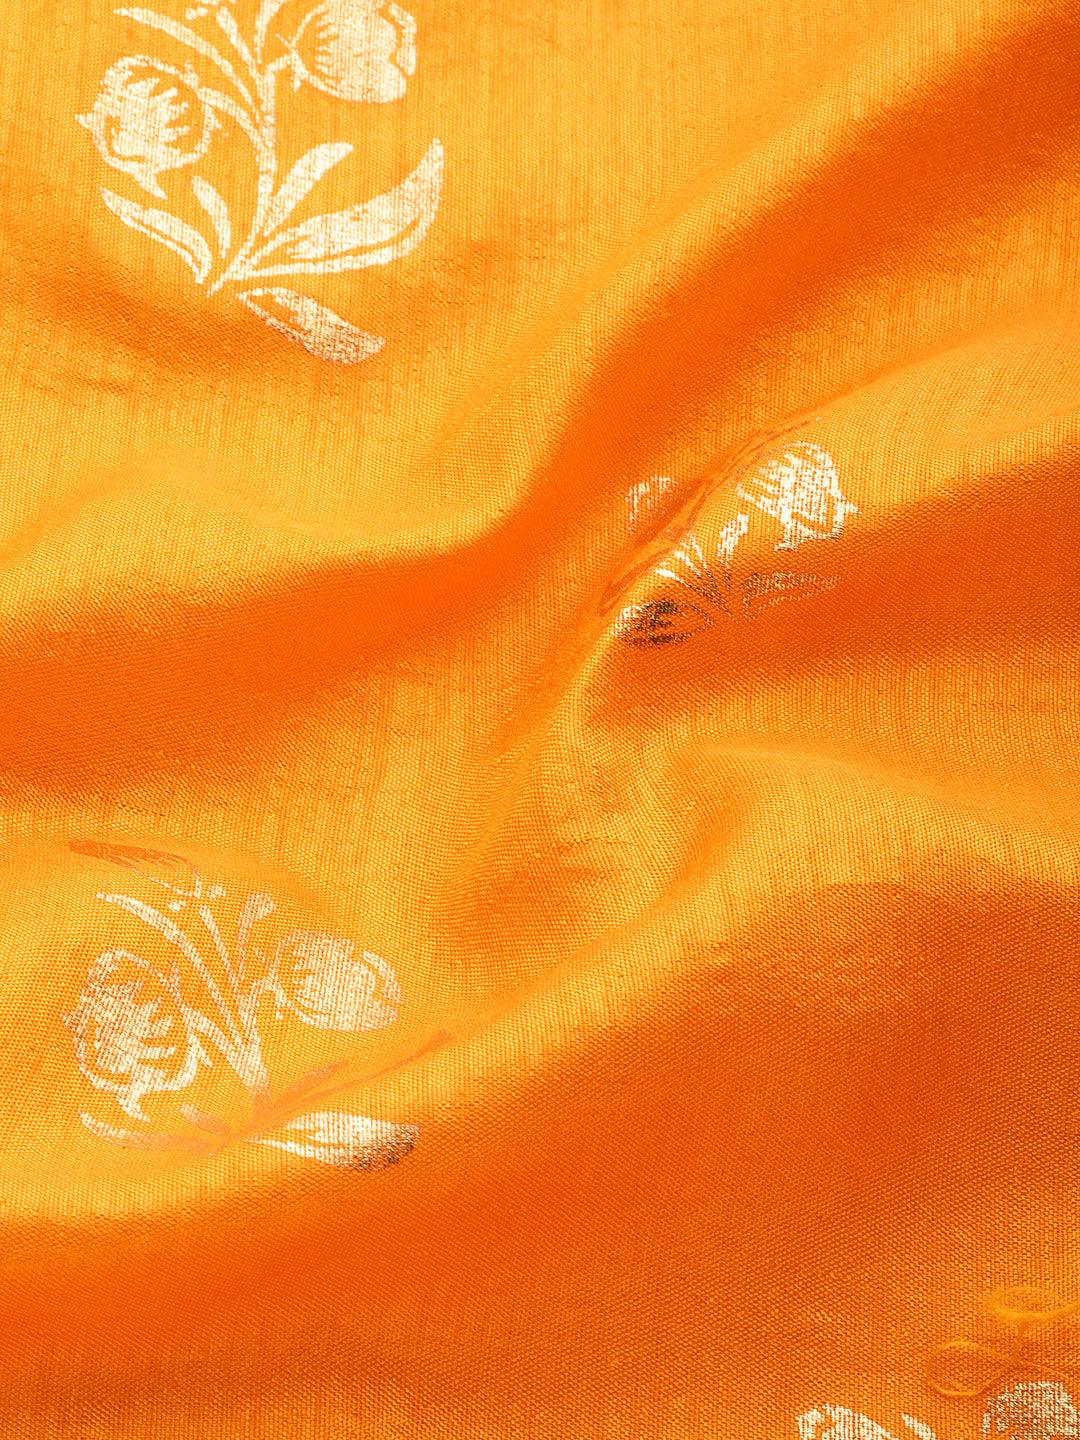 Yellow Printed Silk Blend Saree - Libas